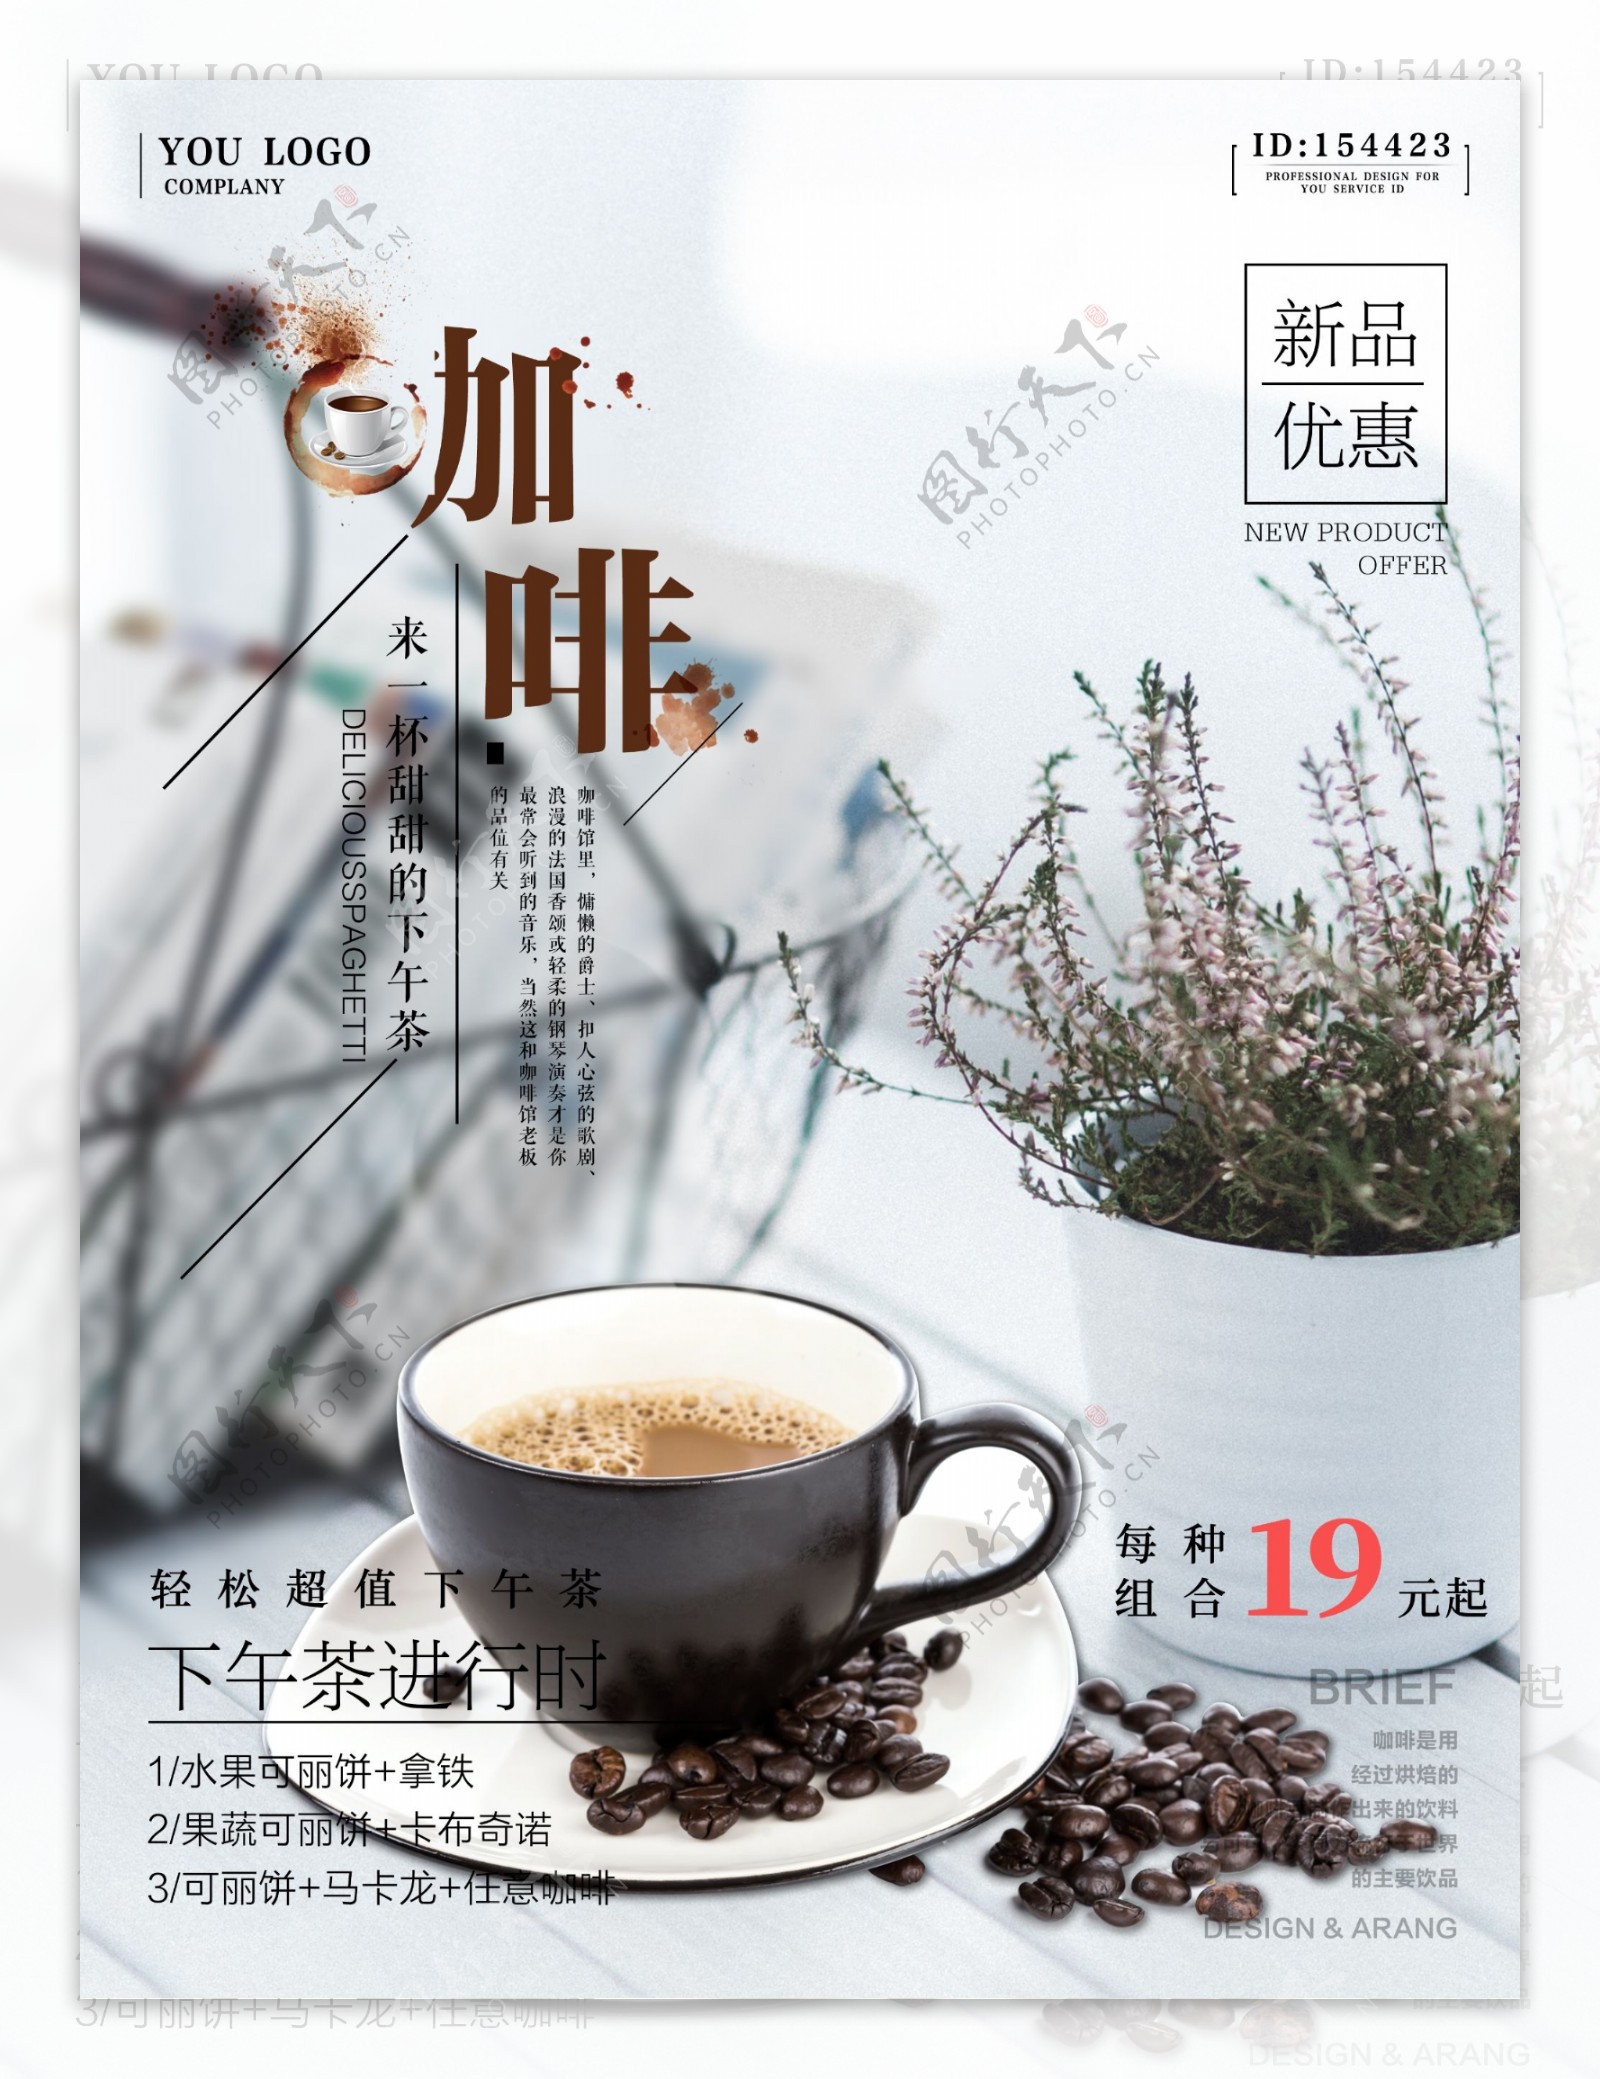 文艺小清新咖啡厅宣传促销海报